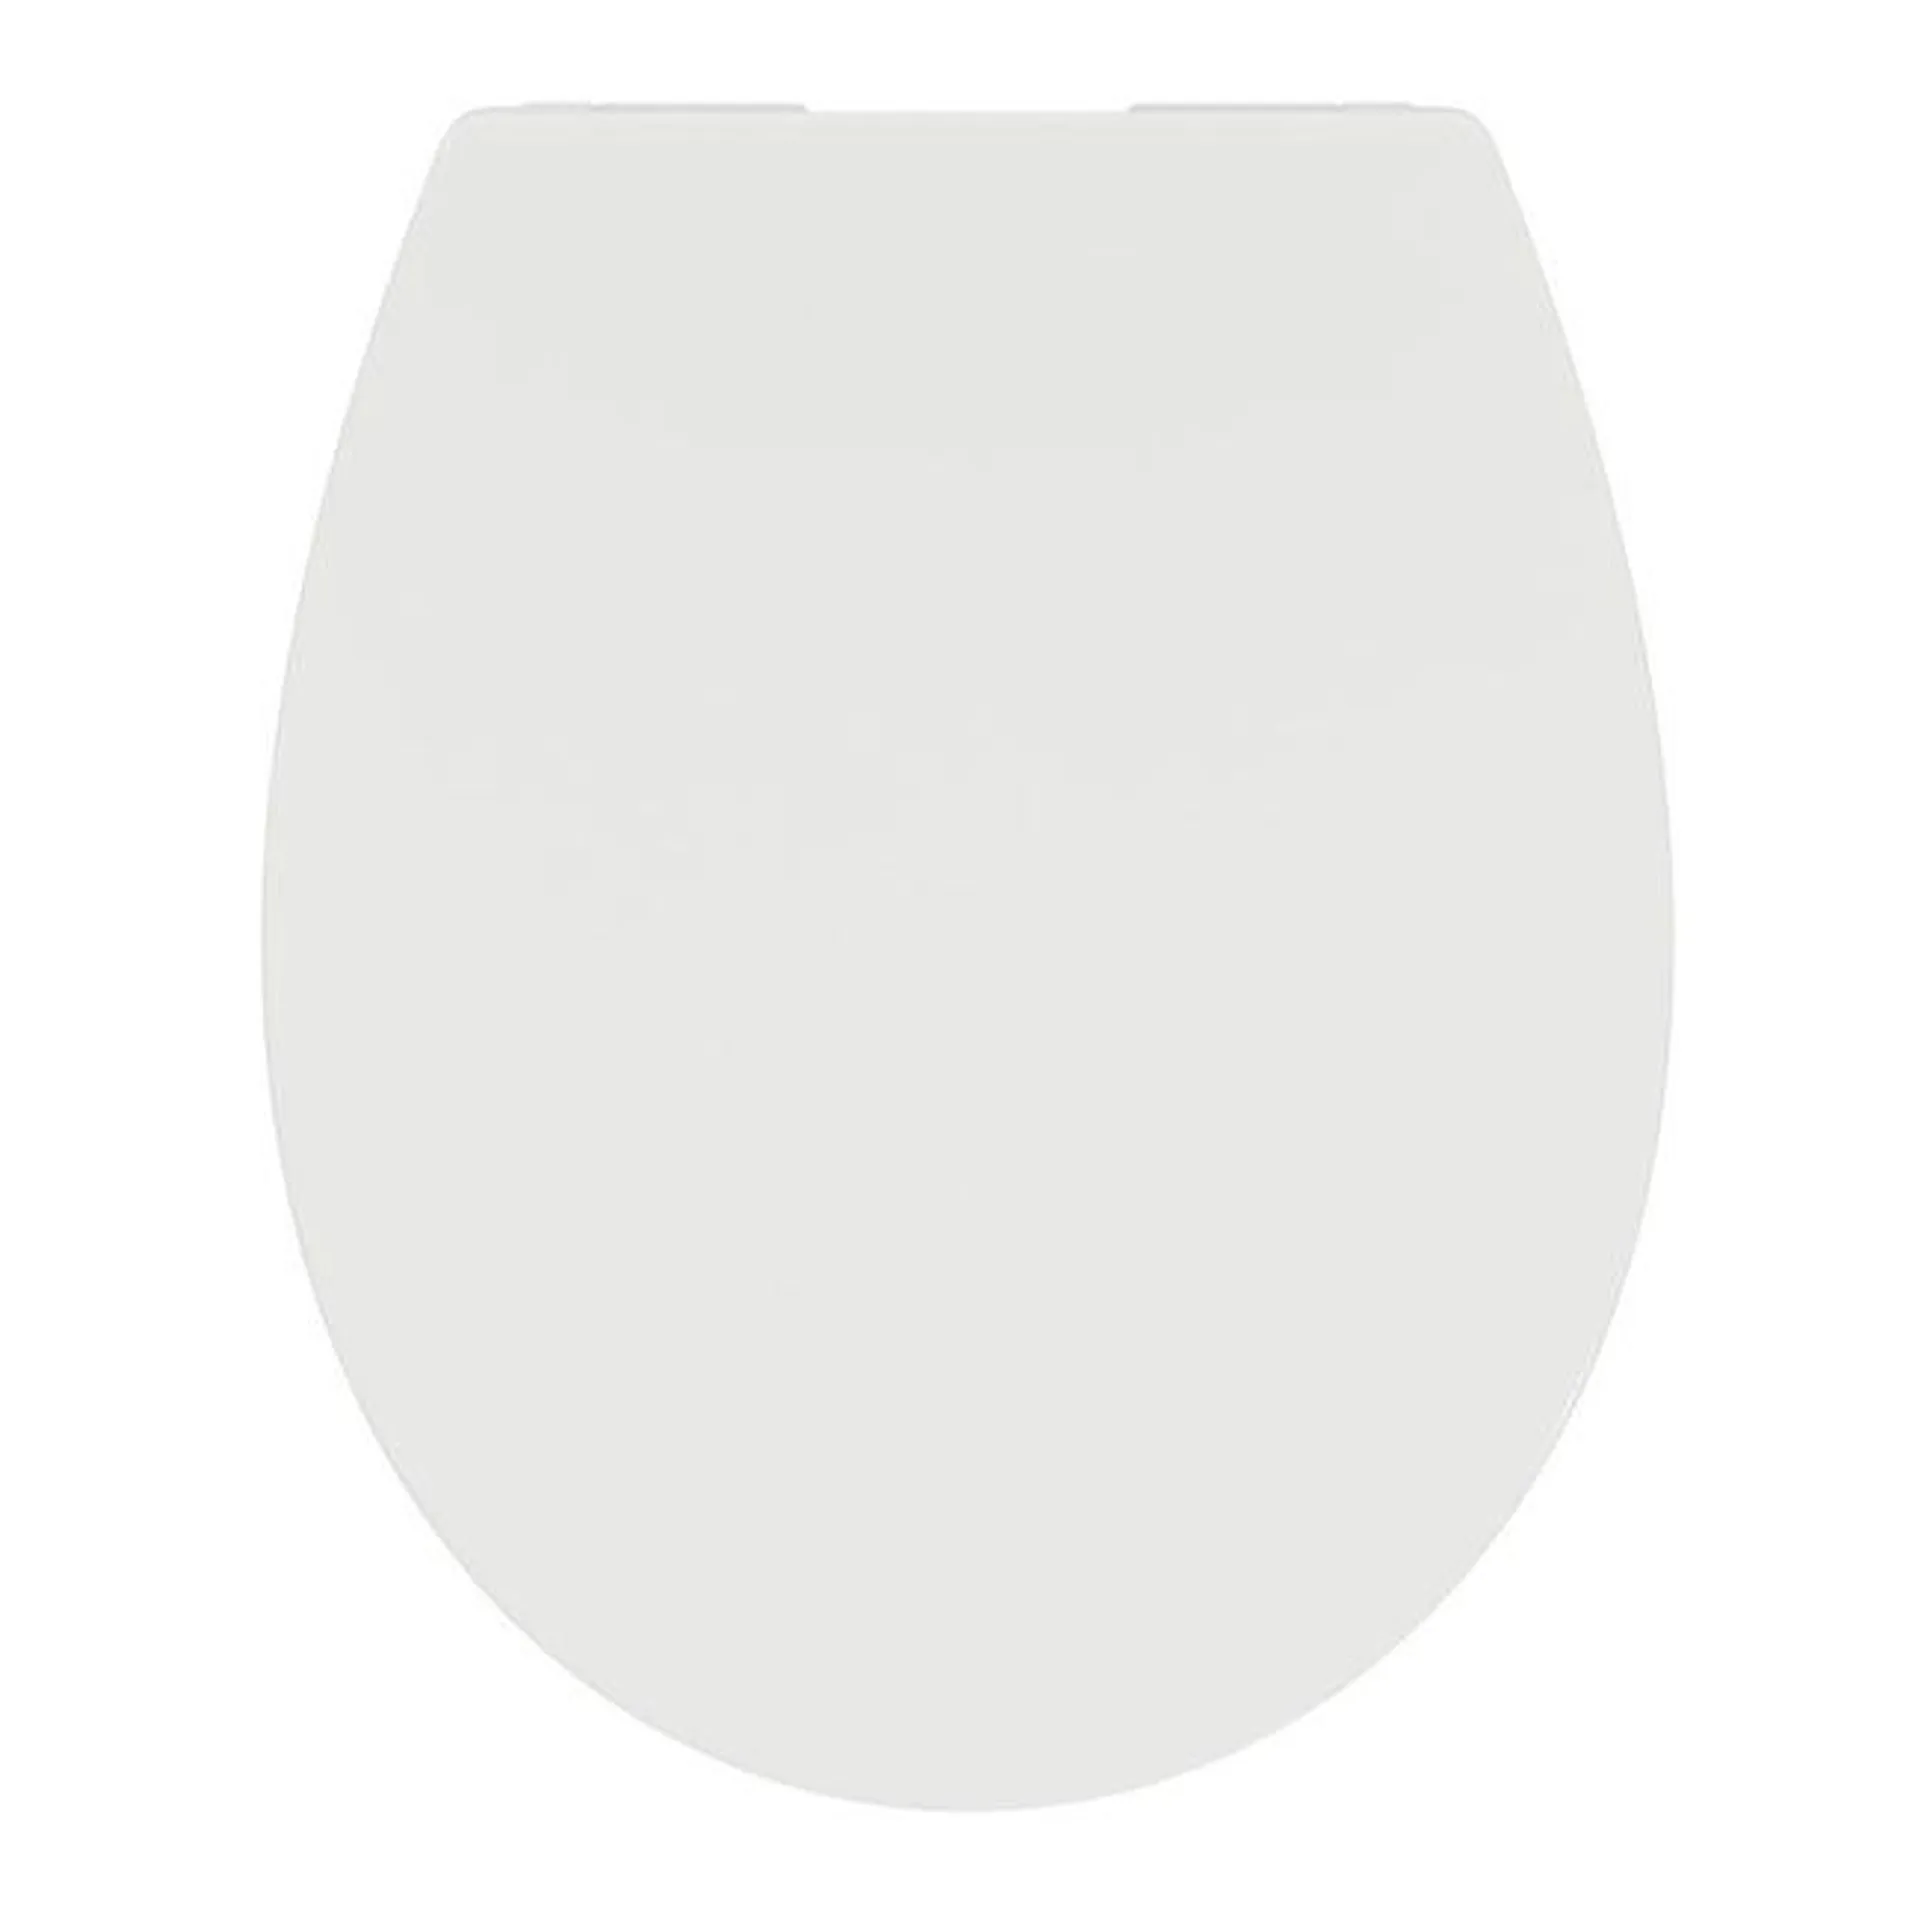 Copriwater ovale Originale per serie sanitari Tirso IDEAL STANDARD termoindurente bianco eur Vedi i dettagli del prodotto